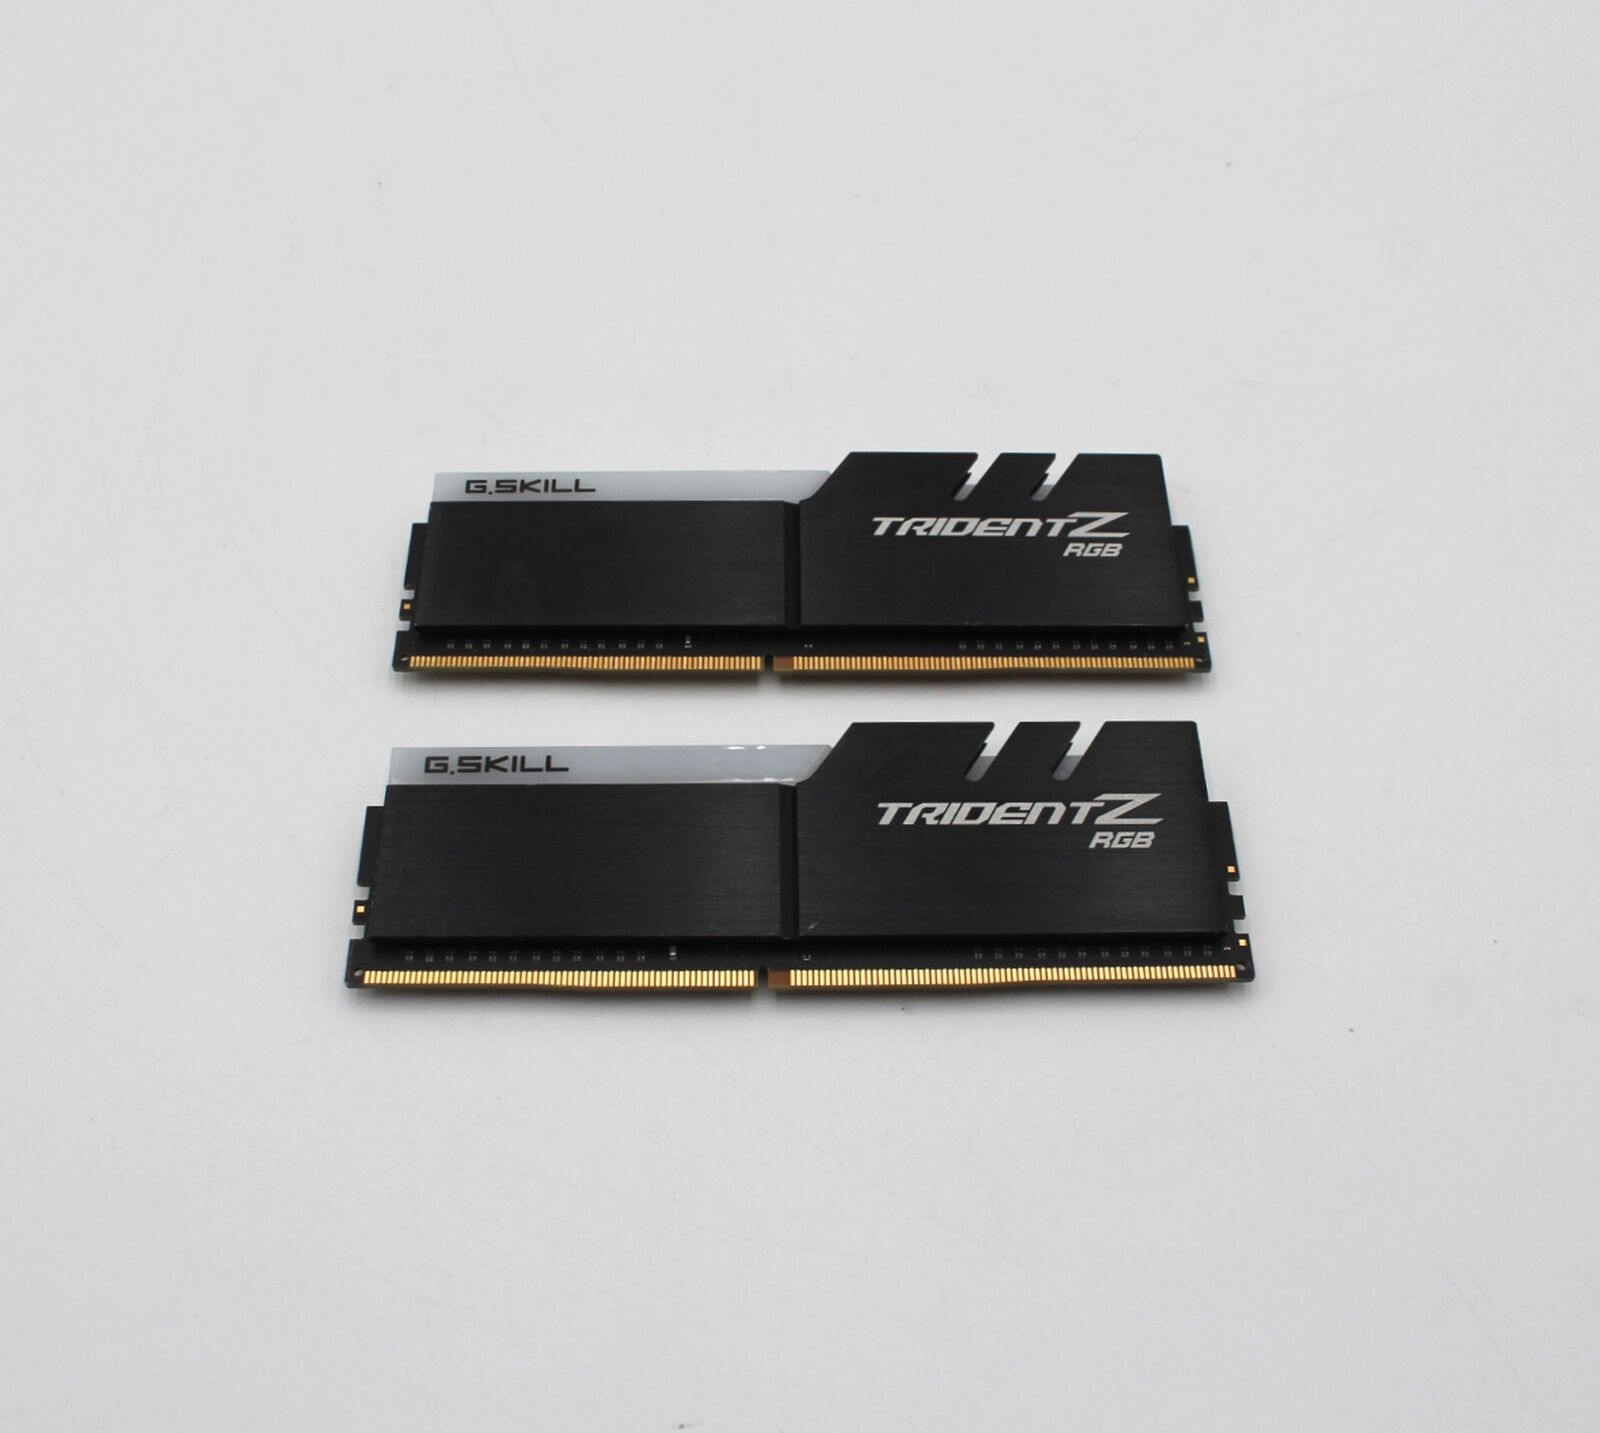 G.Skill TridentZ RGB 16GB Kit (2x8GB) 3200MHz DDR4 F4-3200C16D-16GTZR